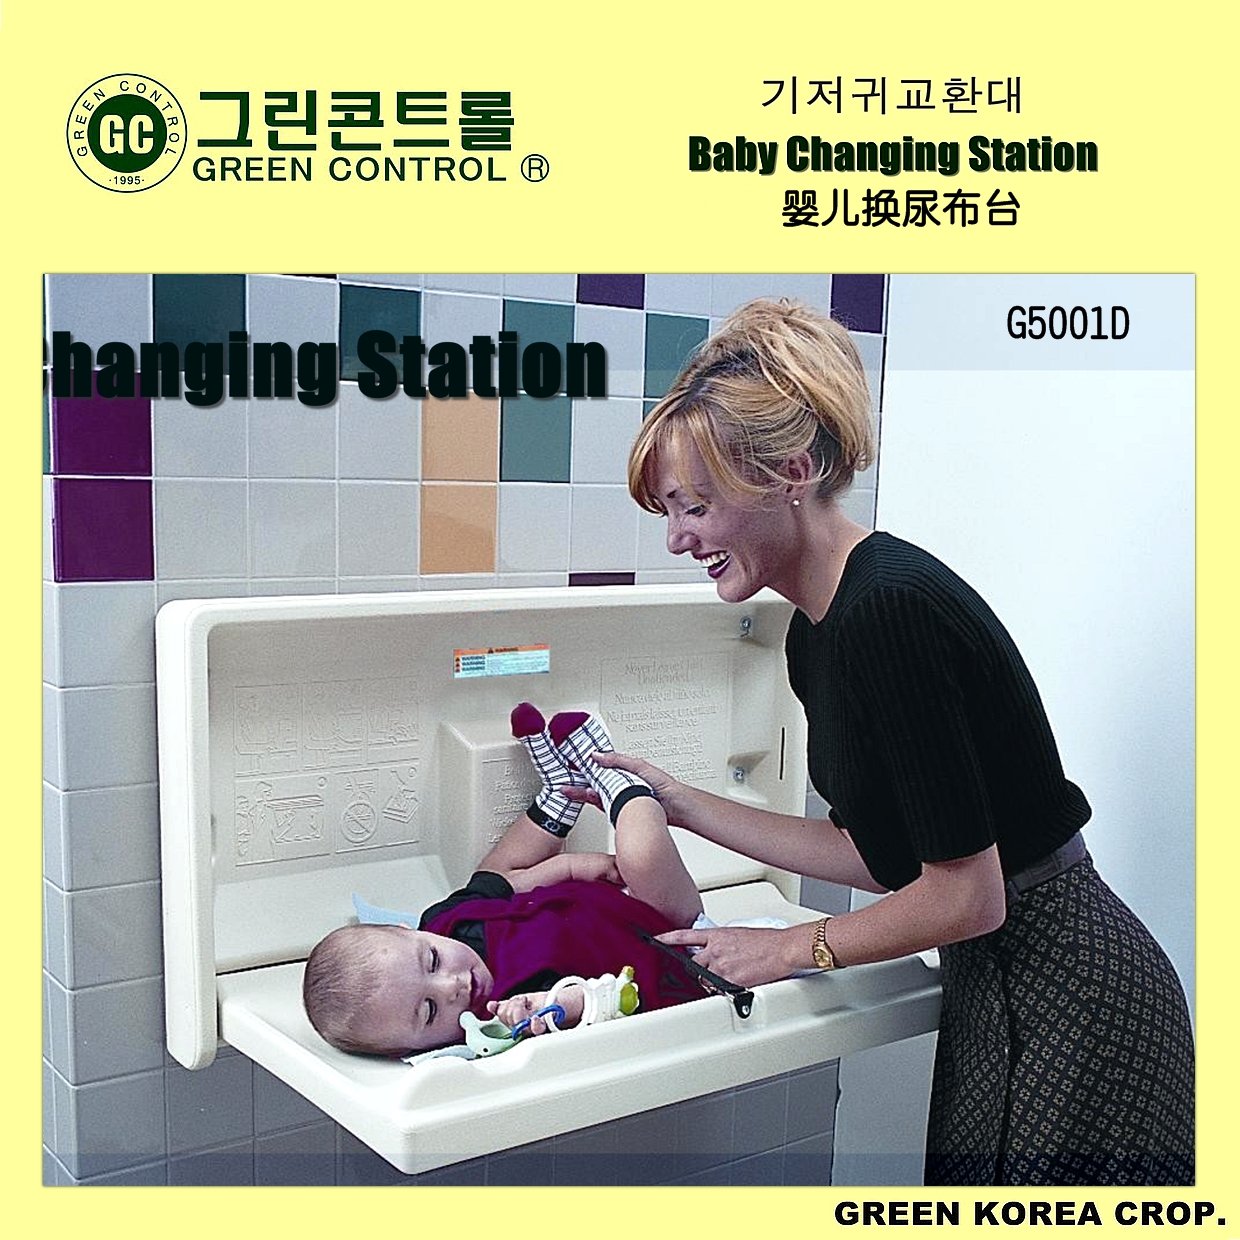 厦门市婴儿护理台厂家供应进口折叠挂壁婴儿护理台（横式） 婴儿换尿布台、婴儿护理台G5001D